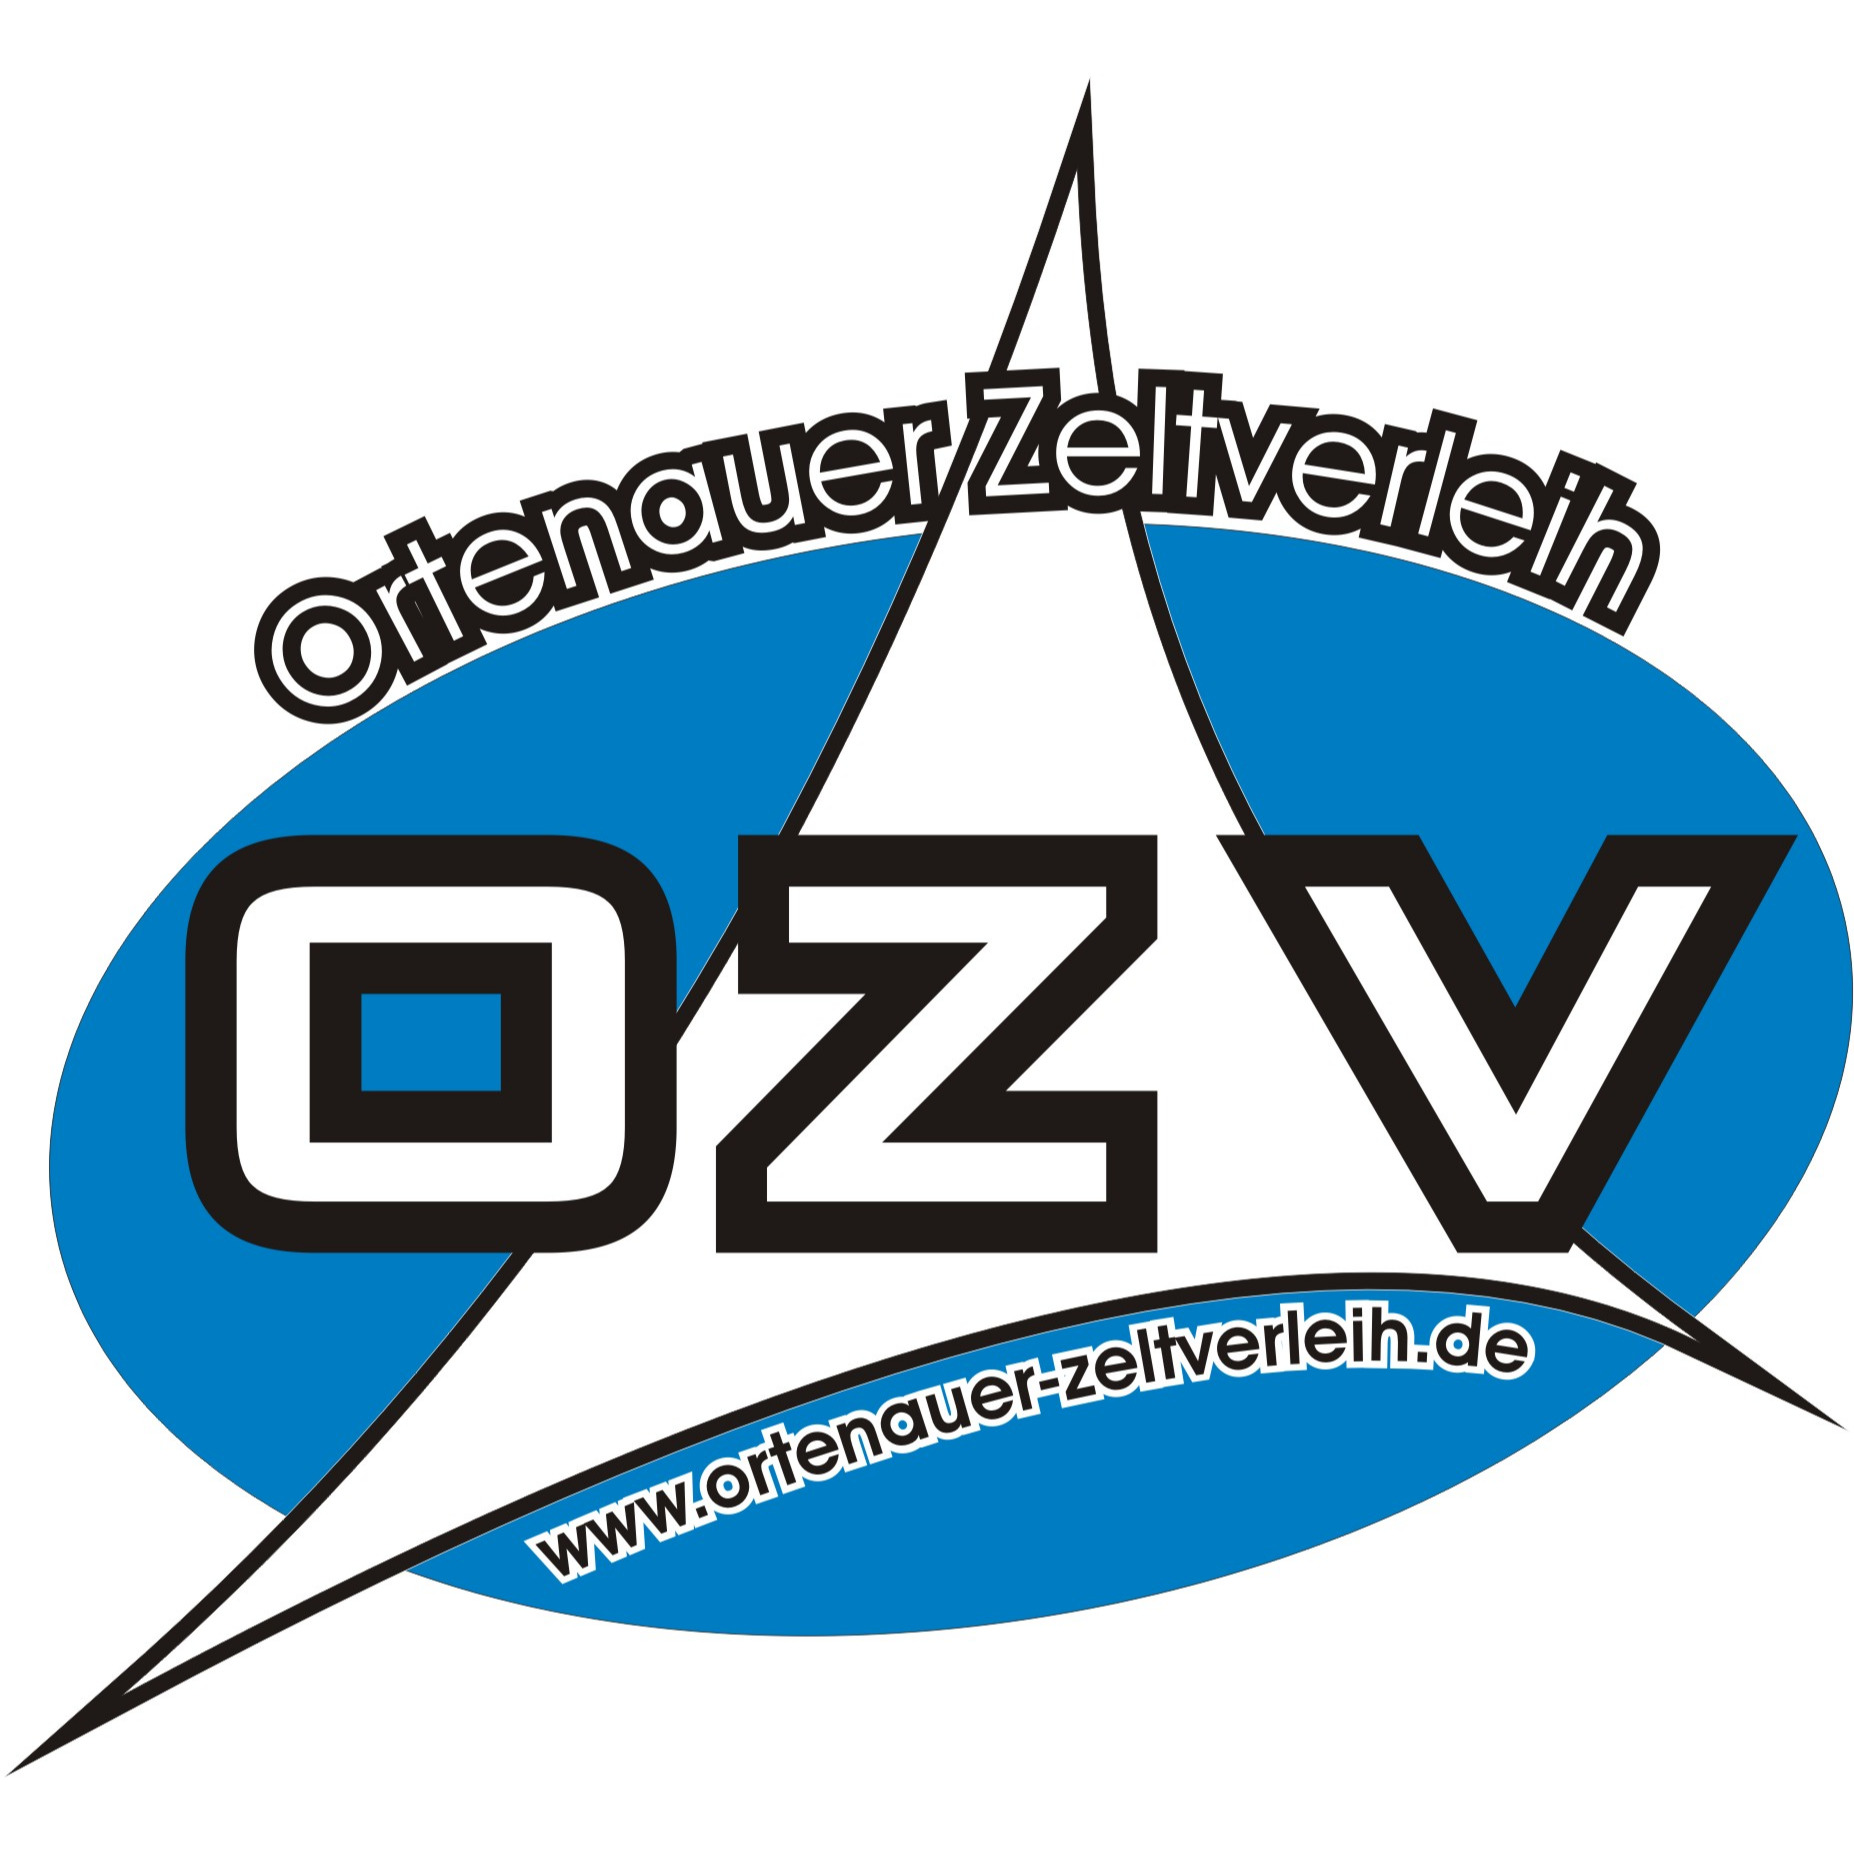 Ortenauer-Zeltverleih Uwe Fladt in Kehl - Logo